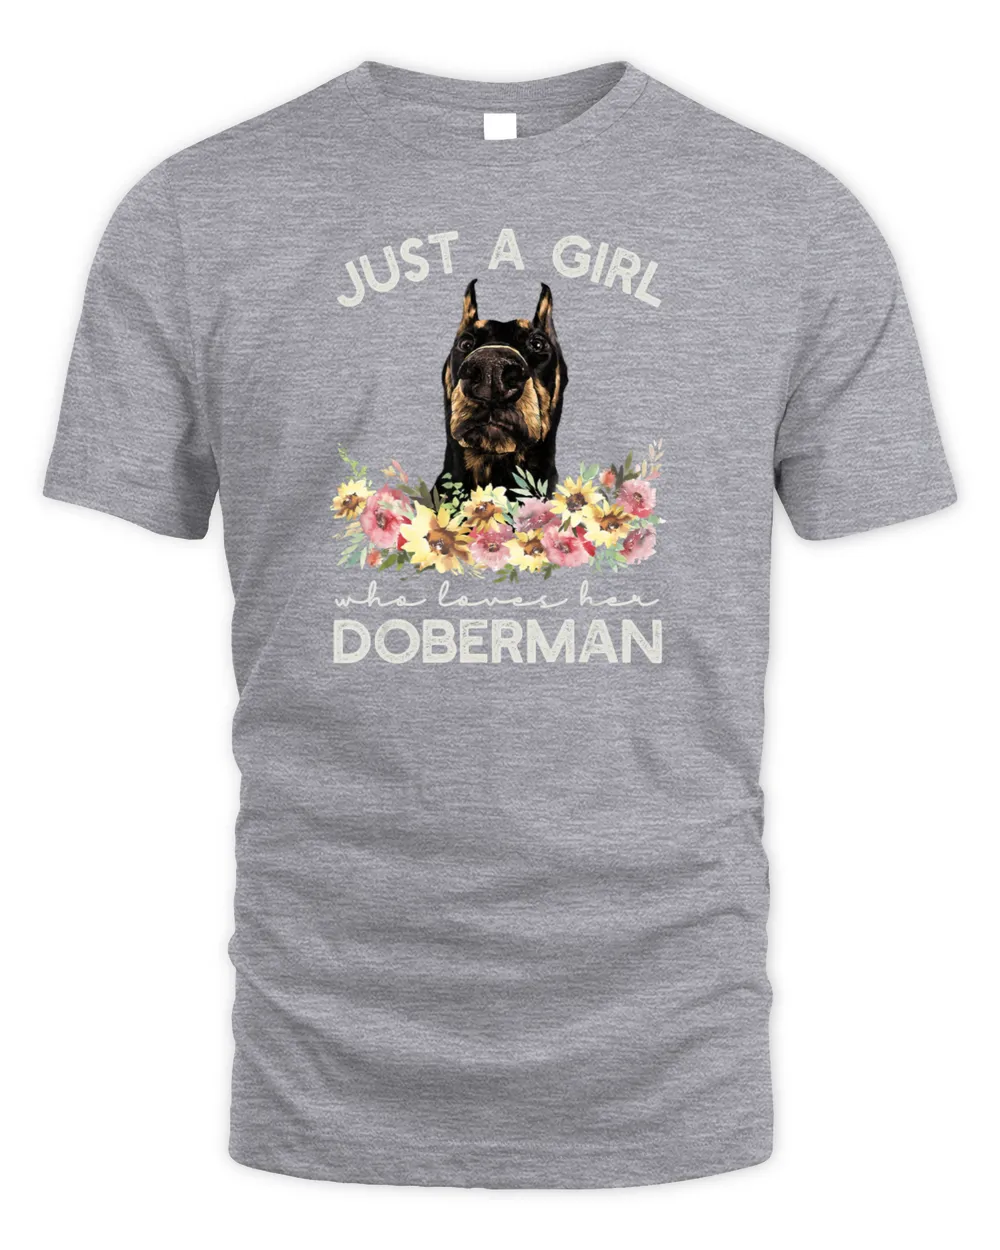 Doberman Pinscher Shirt Women Girl